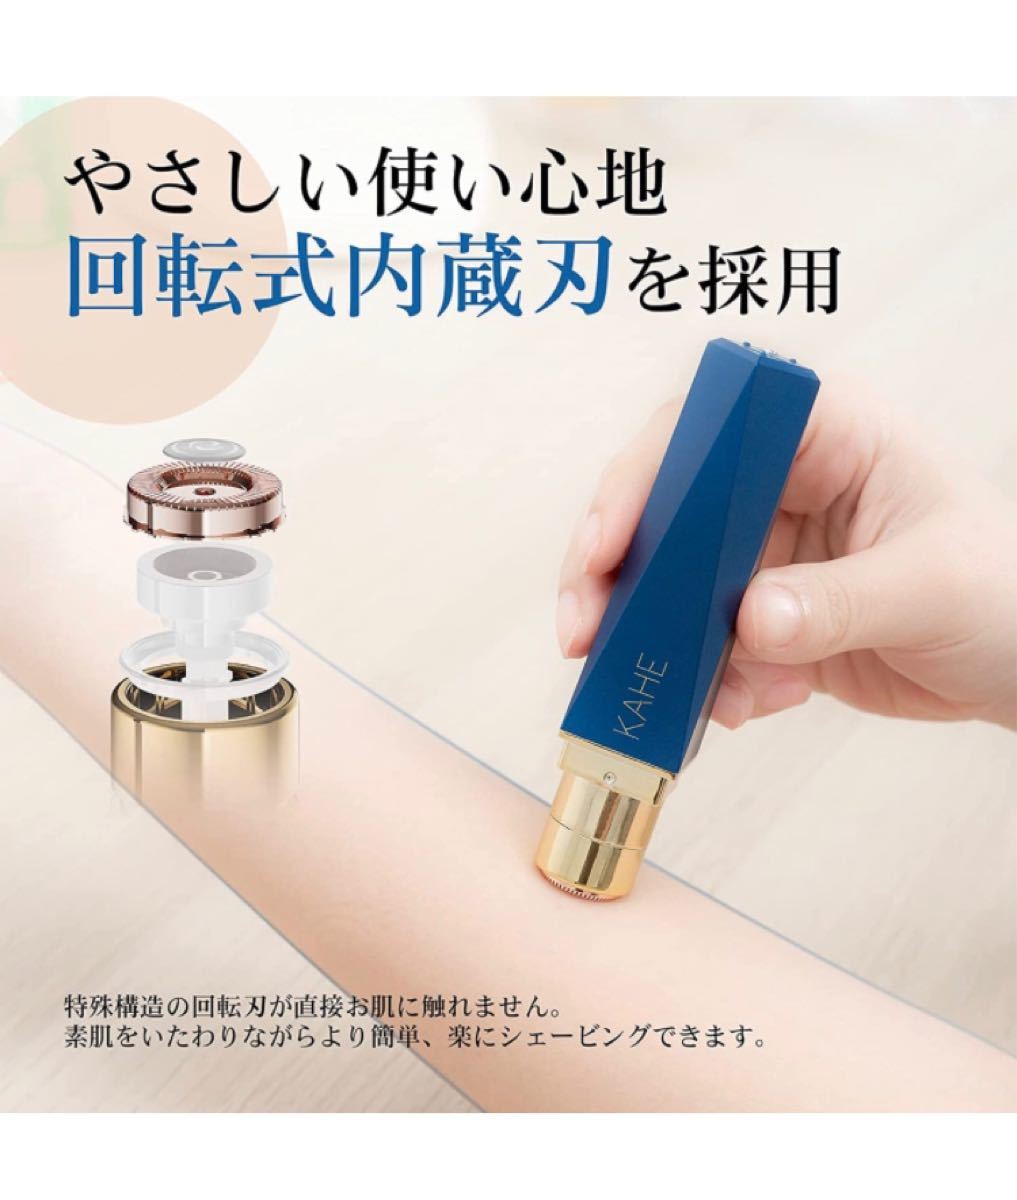 【新品未使用】レディースシェーバー 女性用シェーバー 充電式